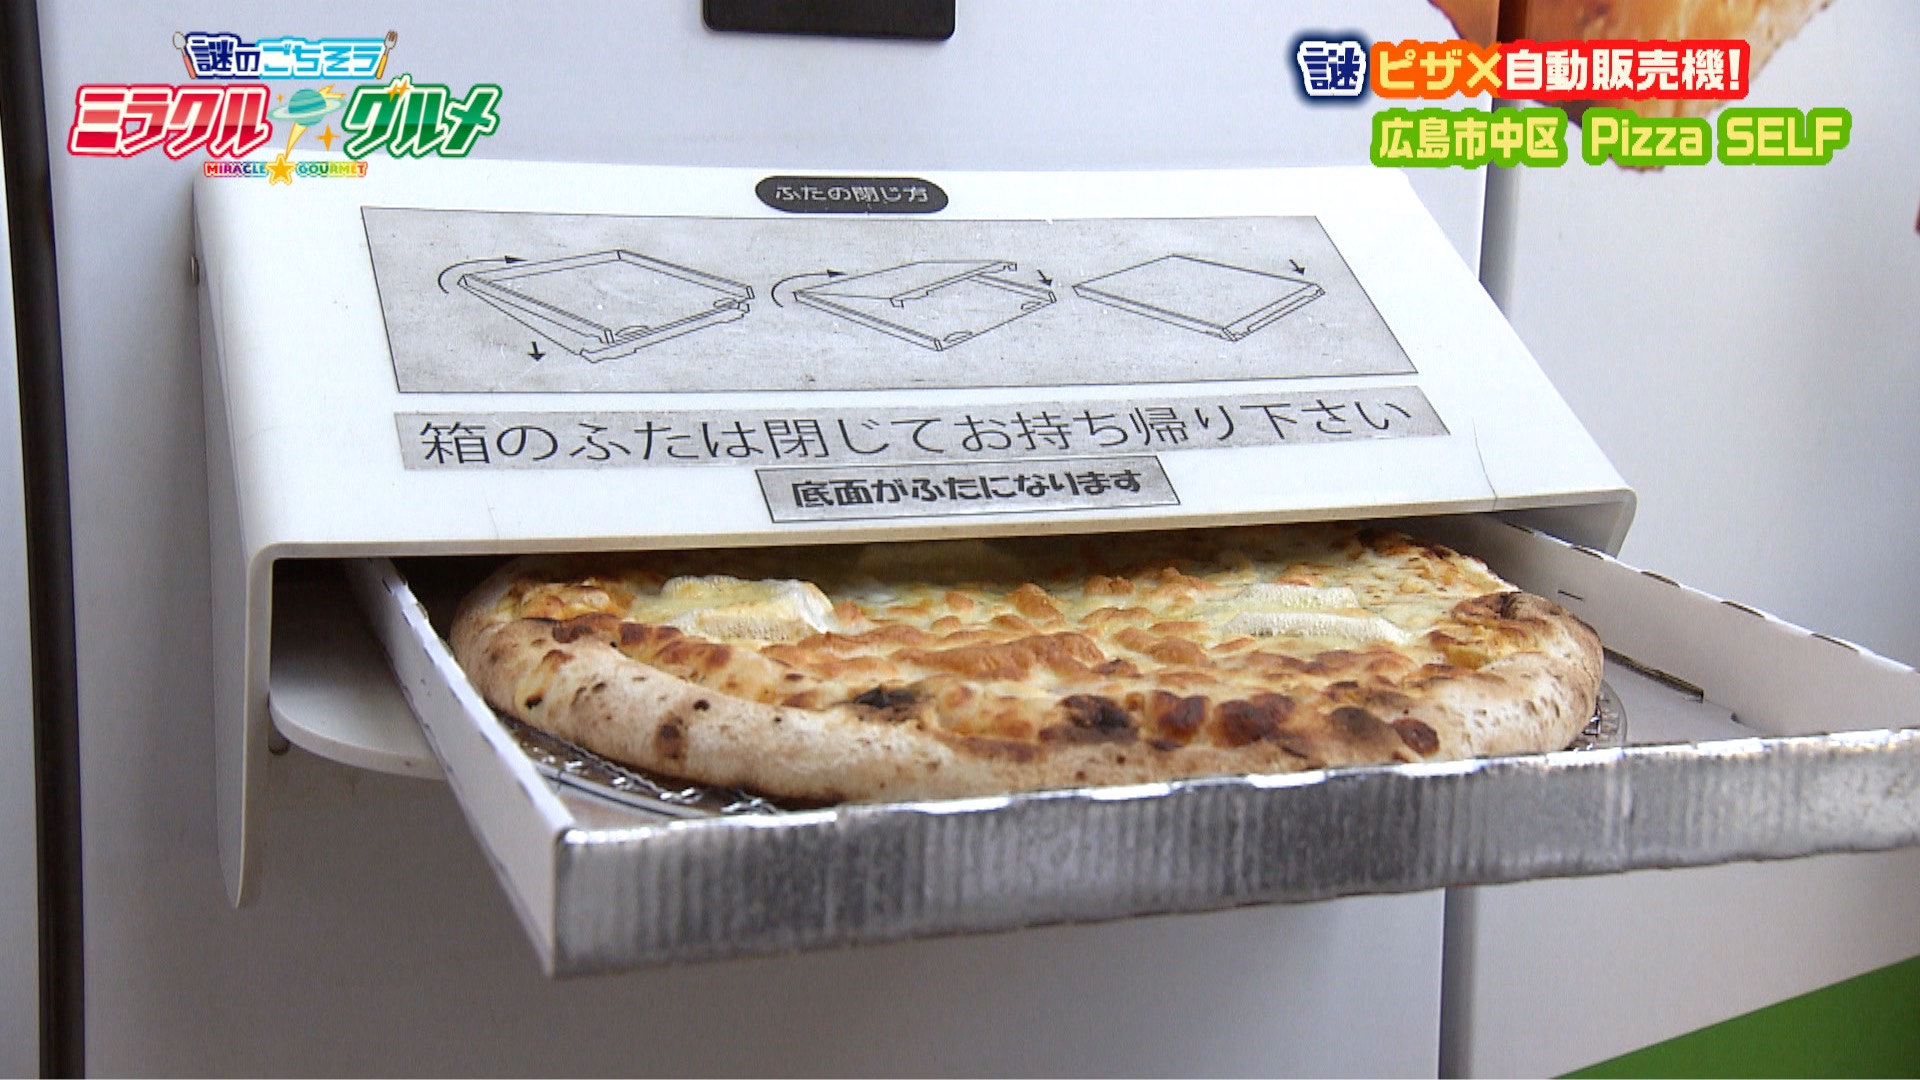 ピザの自動販売機 Pizza SELF